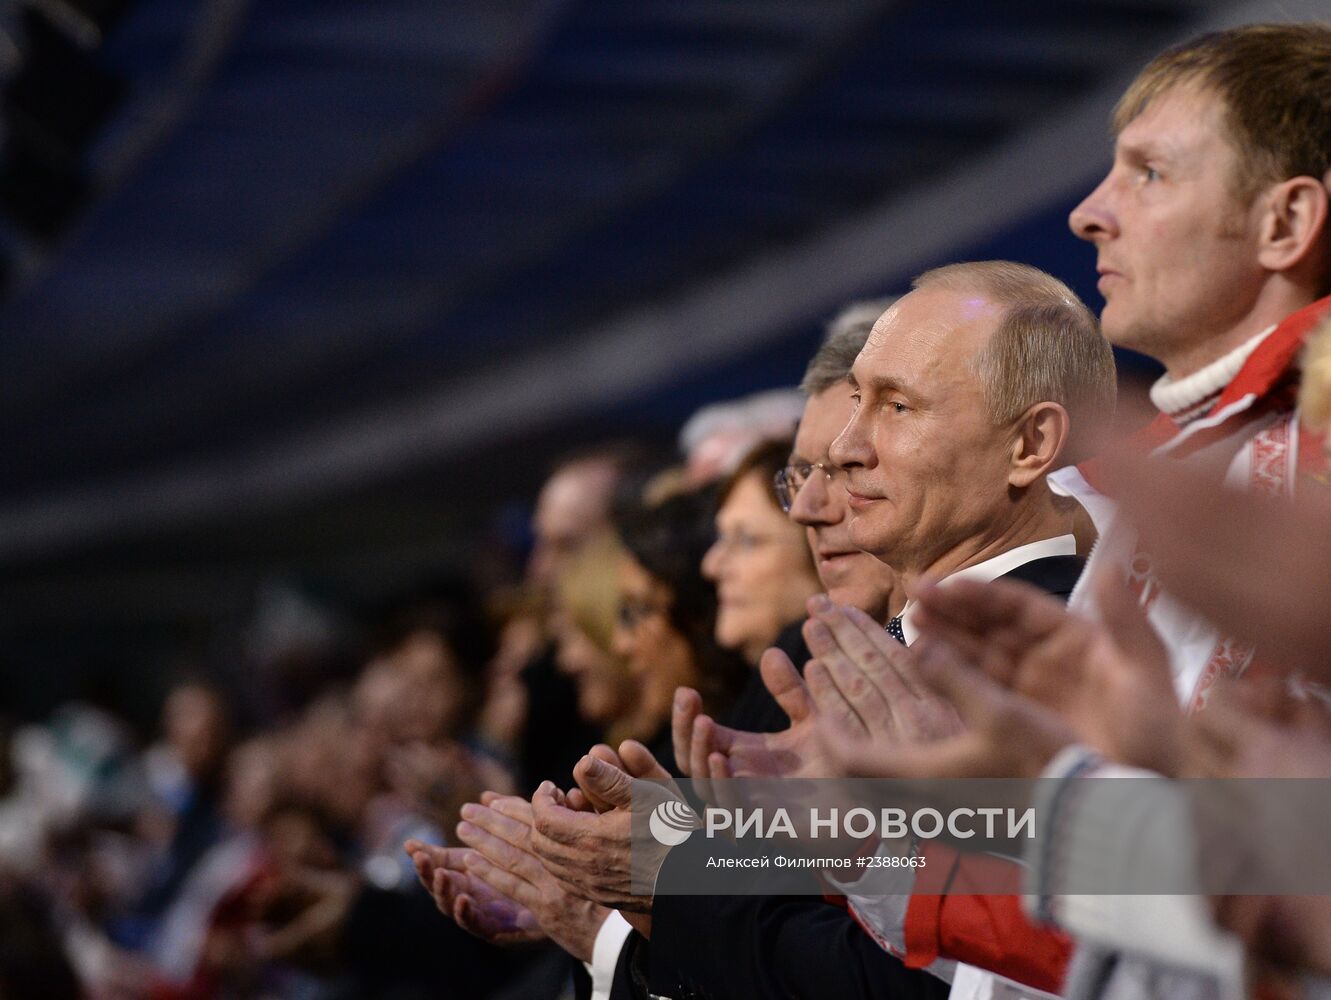 В.Путин и Д.Медведев посетили церемонию закрытия XXII зимних Олимпийских игр в Сочи